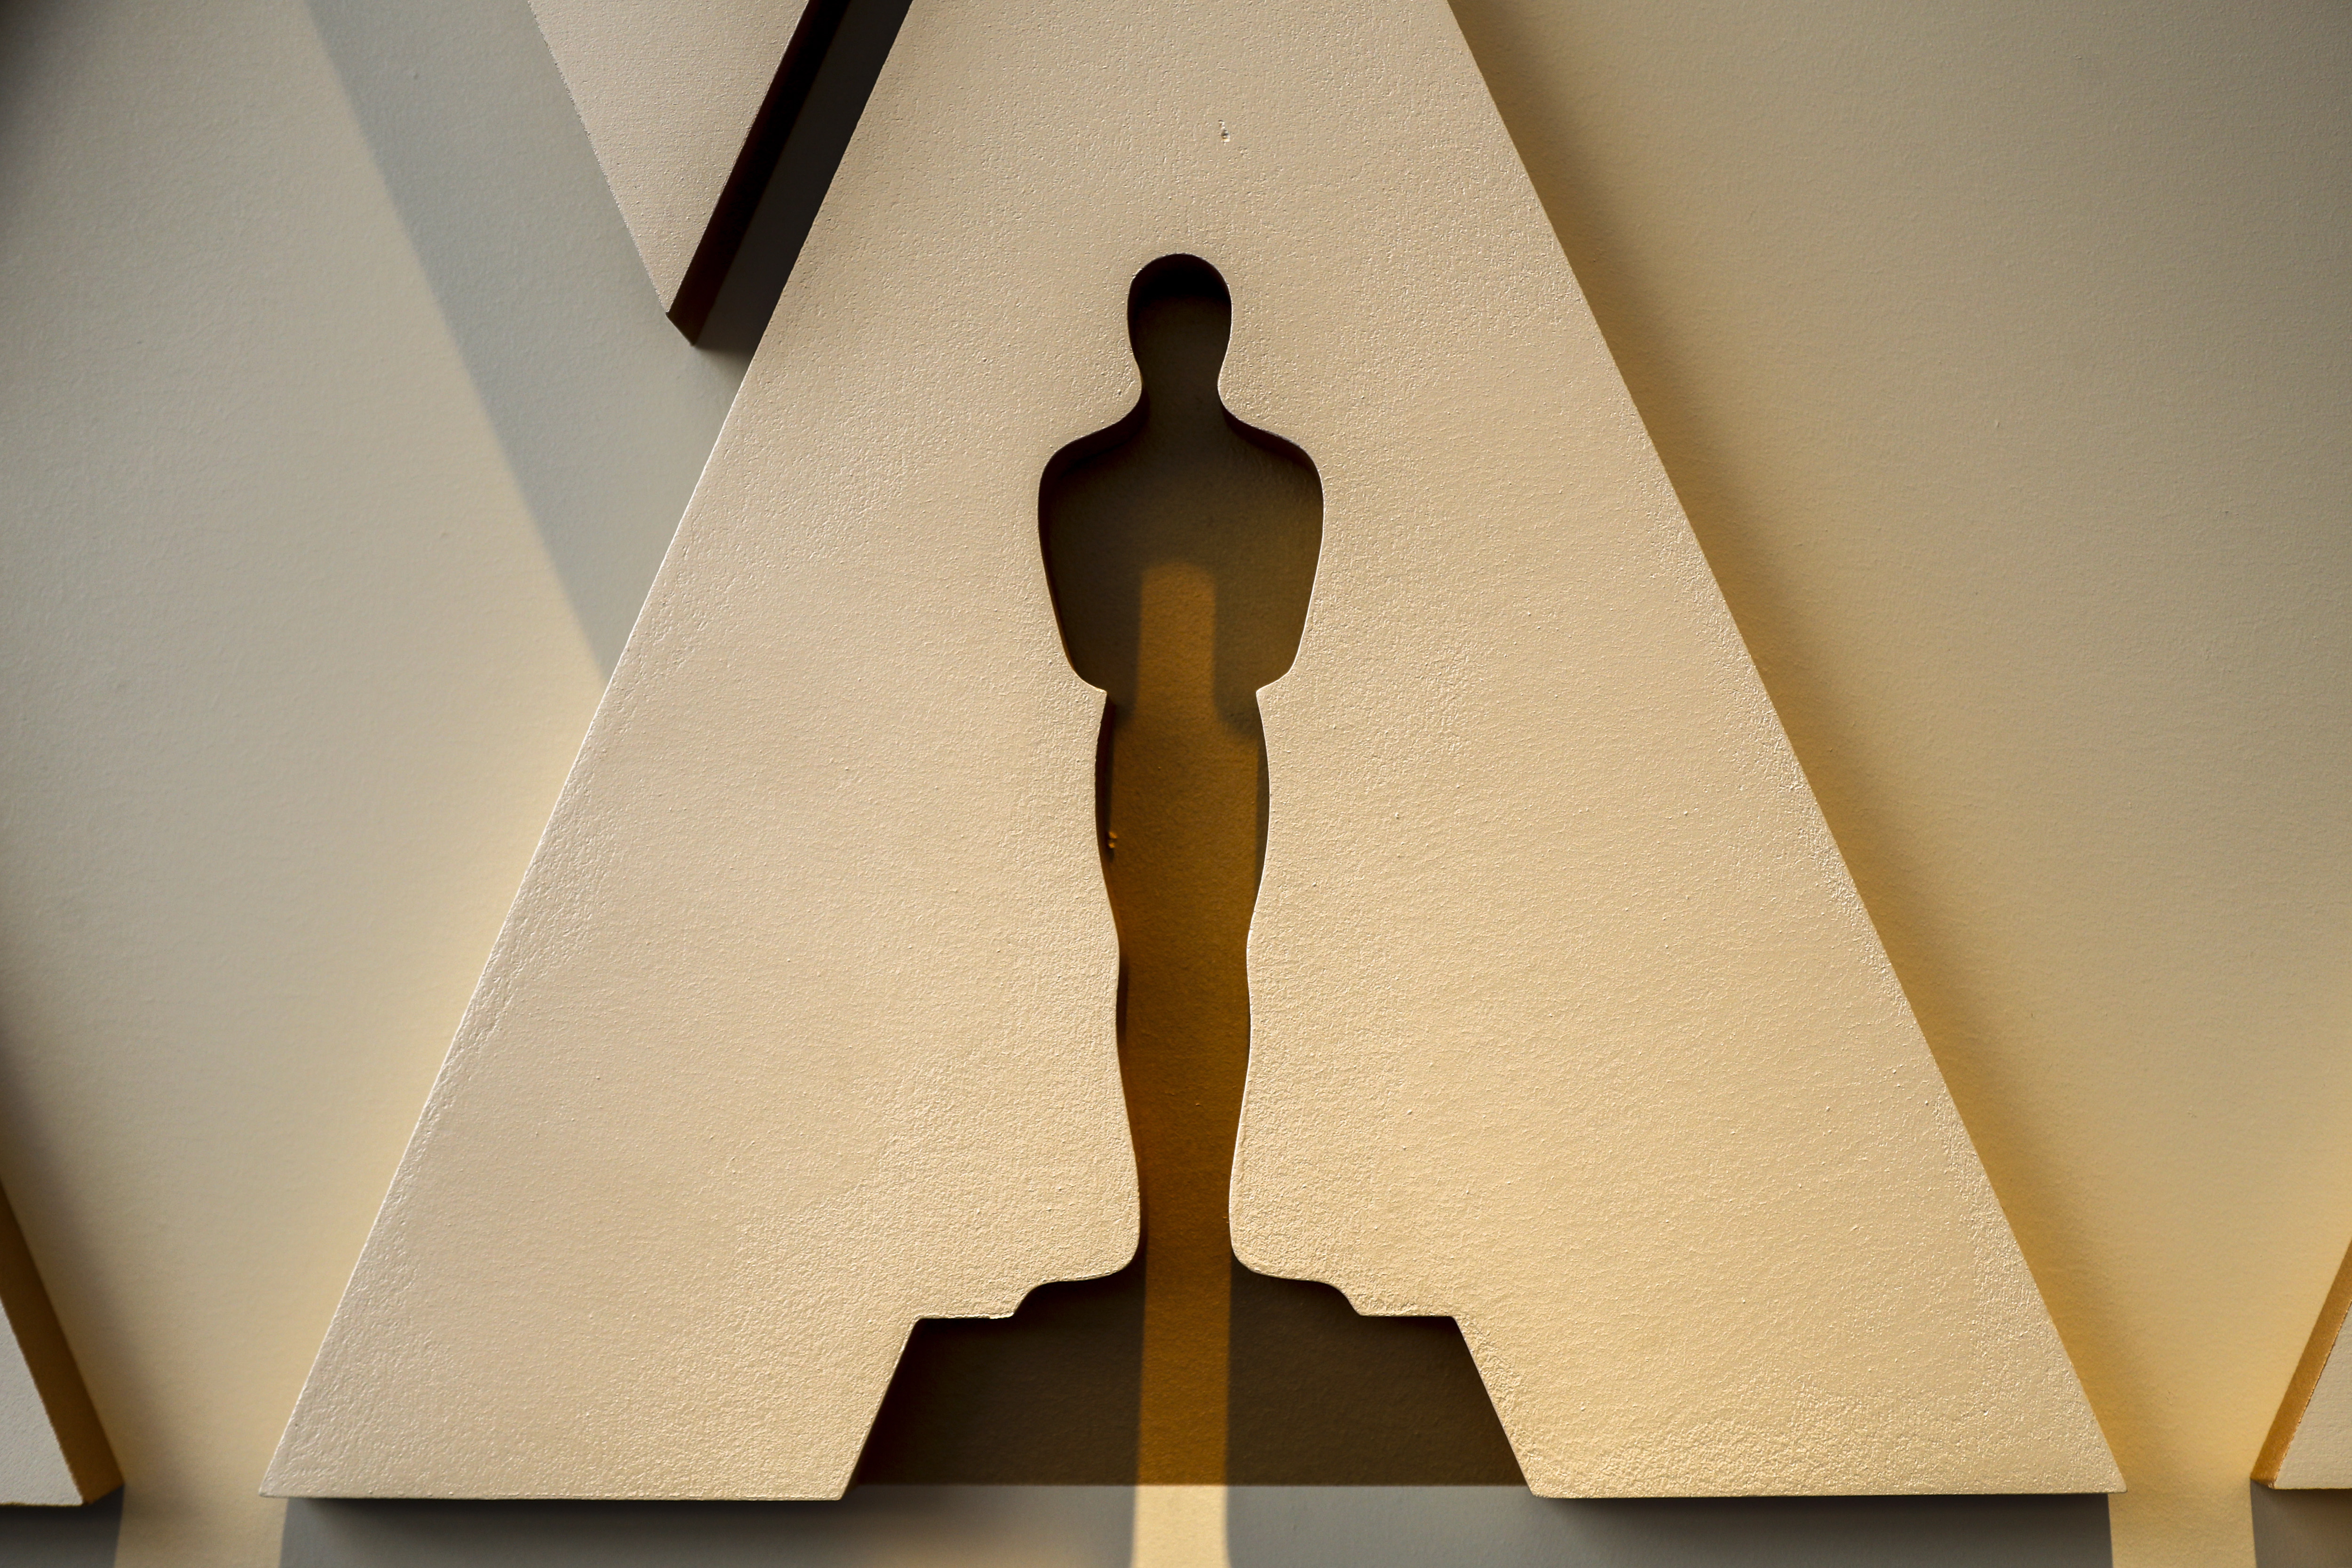 La Academia restableció requisitos para optar al Óscar de cara a su próxima edición